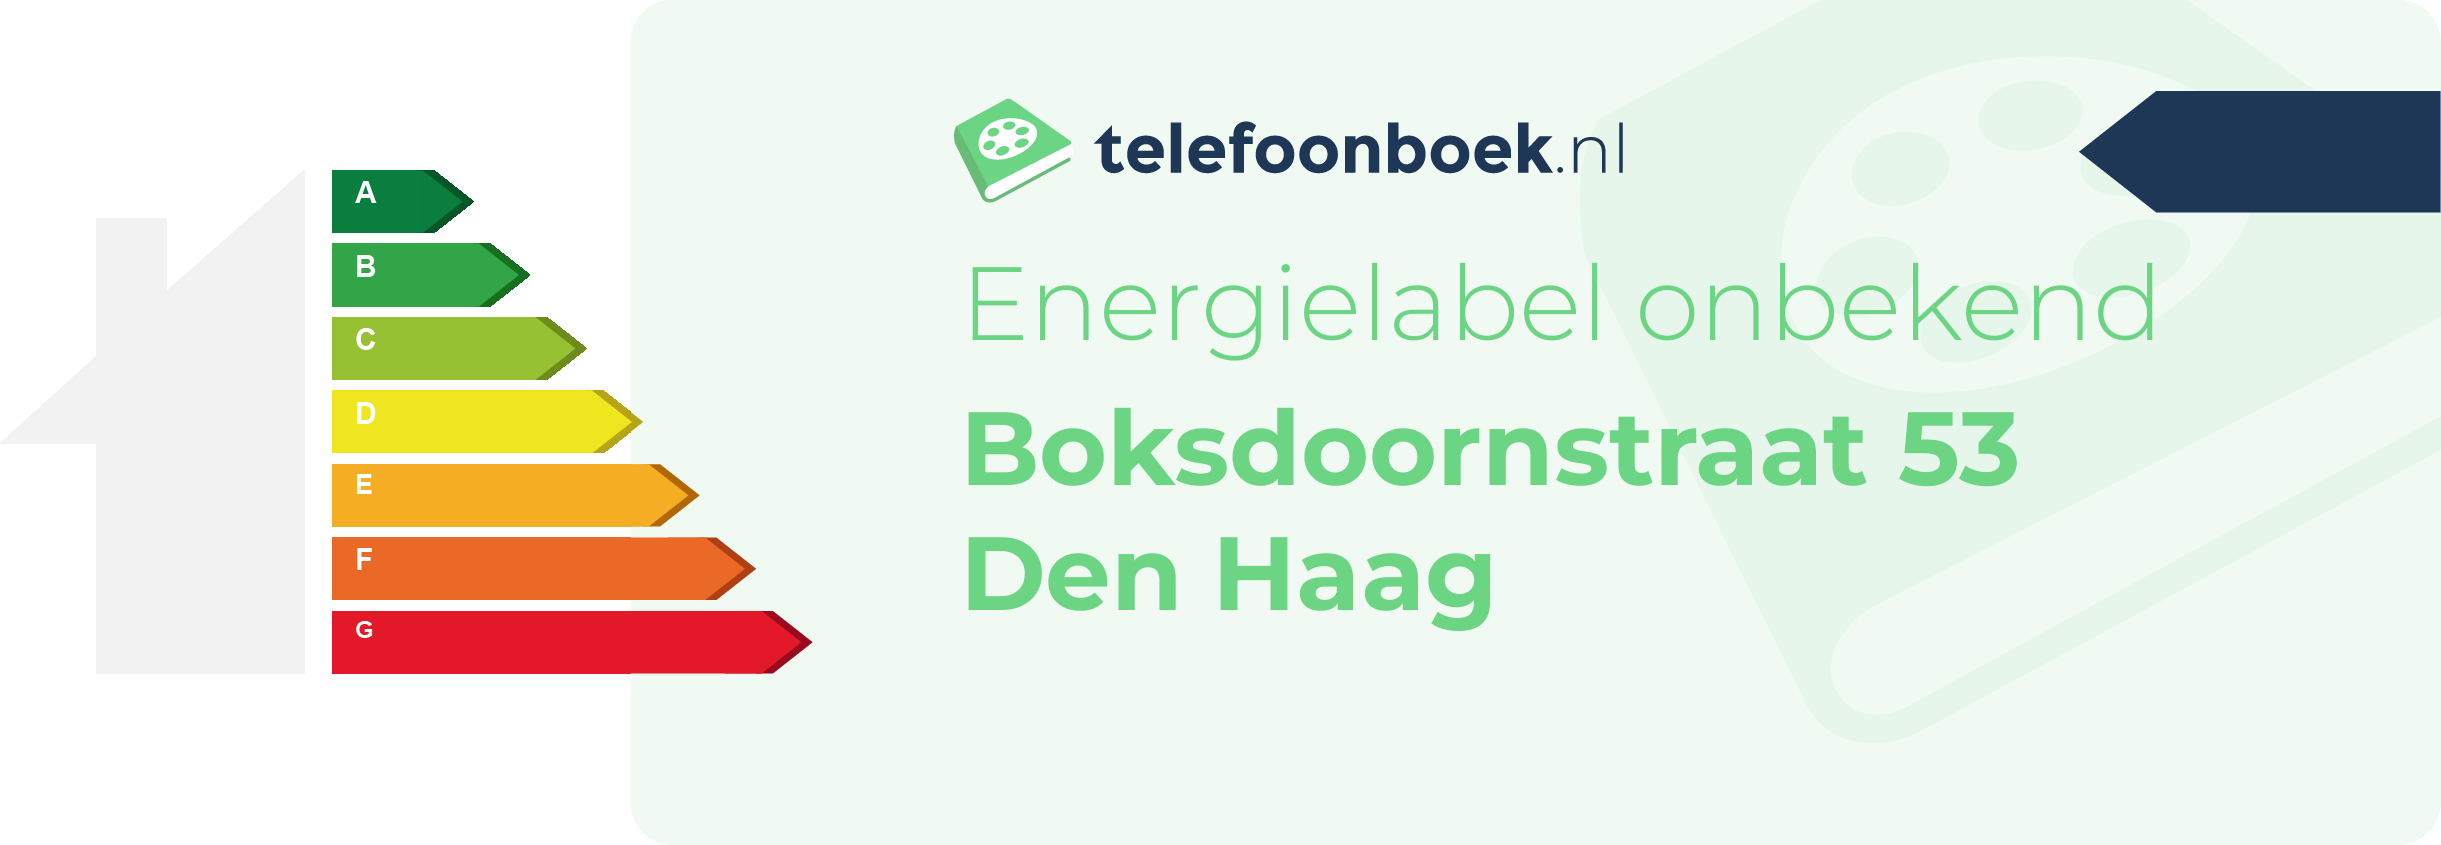 Energielabel Boksdoornstraat 53 Den Haag